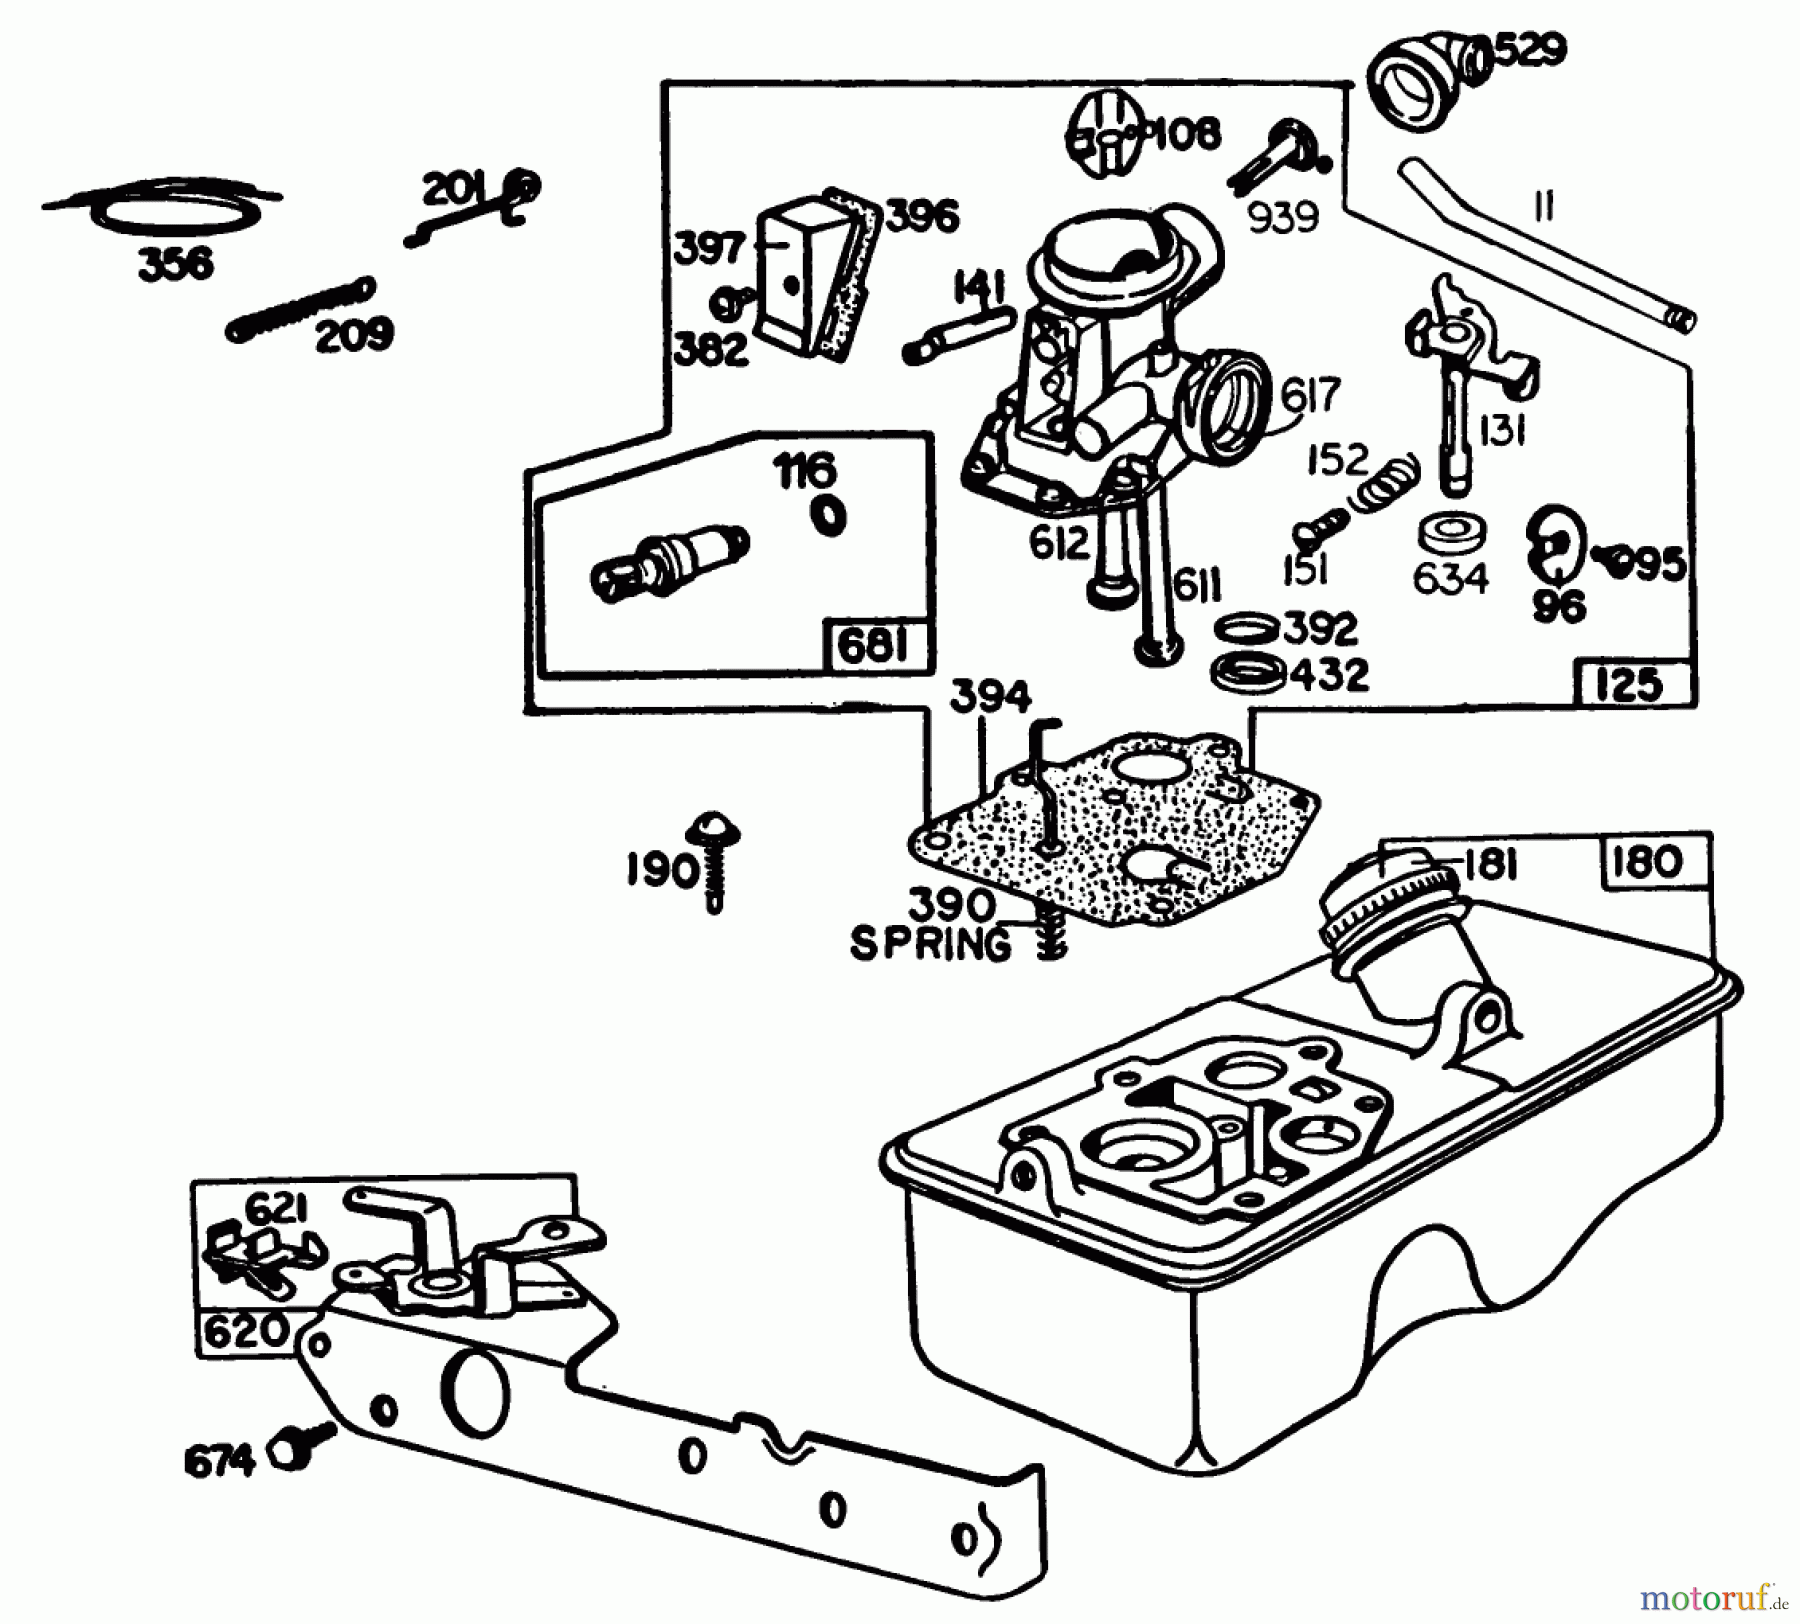  Toro Neu Mowers, Walk-Behind Seite 1 20661 - Toro Lawnmower, 1983 (3000001-3999999) ENGINE BRIGGS & STRATTON MODEL NO. 110908-120401